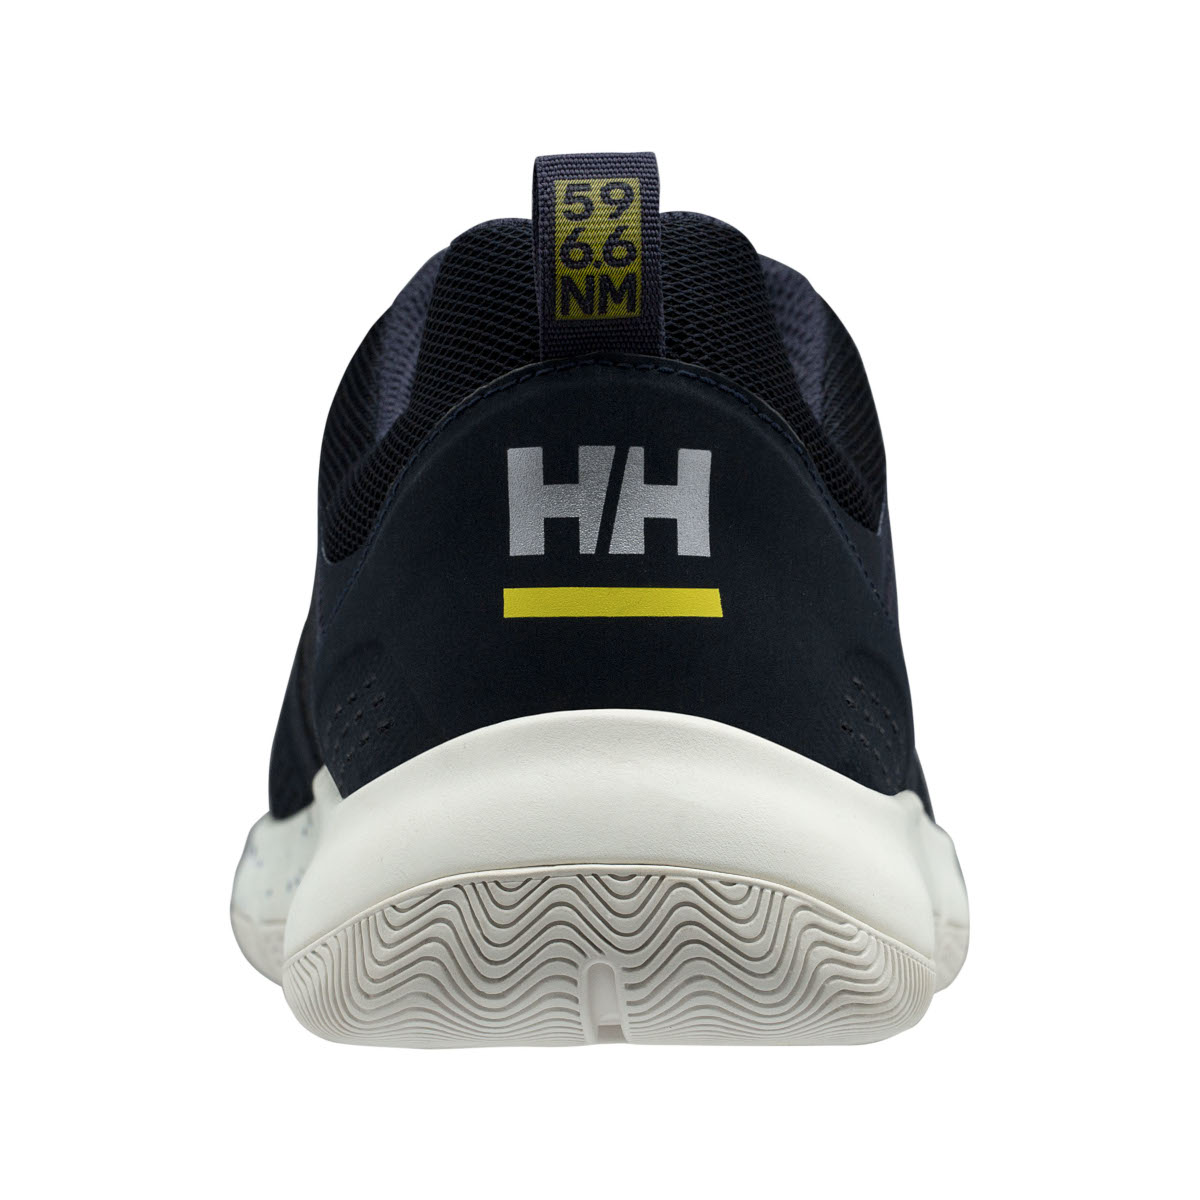 Helly Hansen Skagen F-1 chaussures de voile offshore hommes bleu marine, taille 46,5